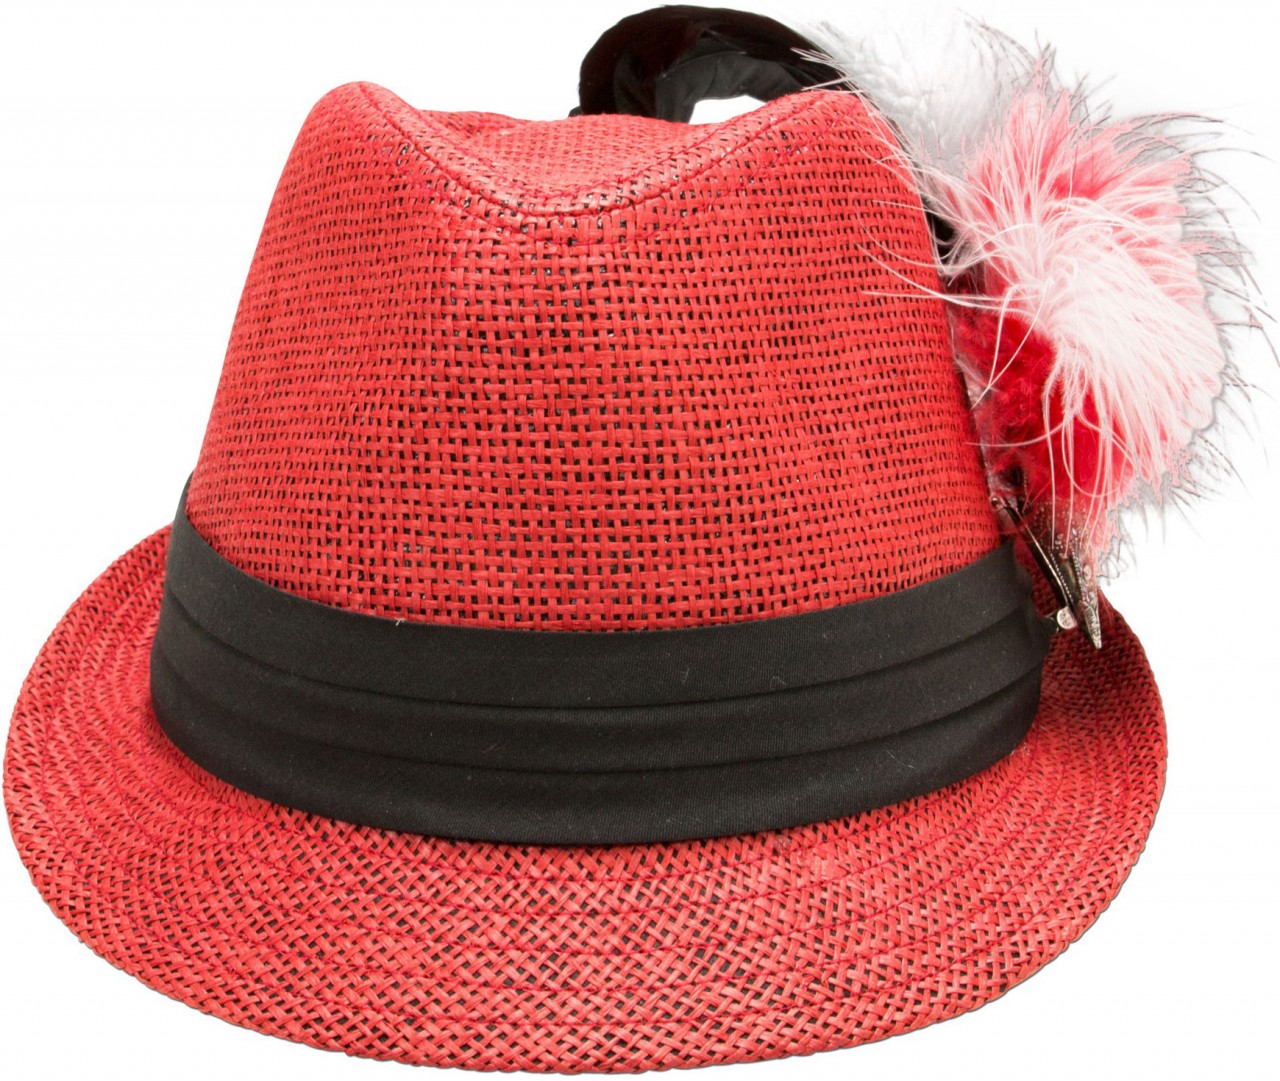 Aperçu: Chapeau de Trachten en paille rouge